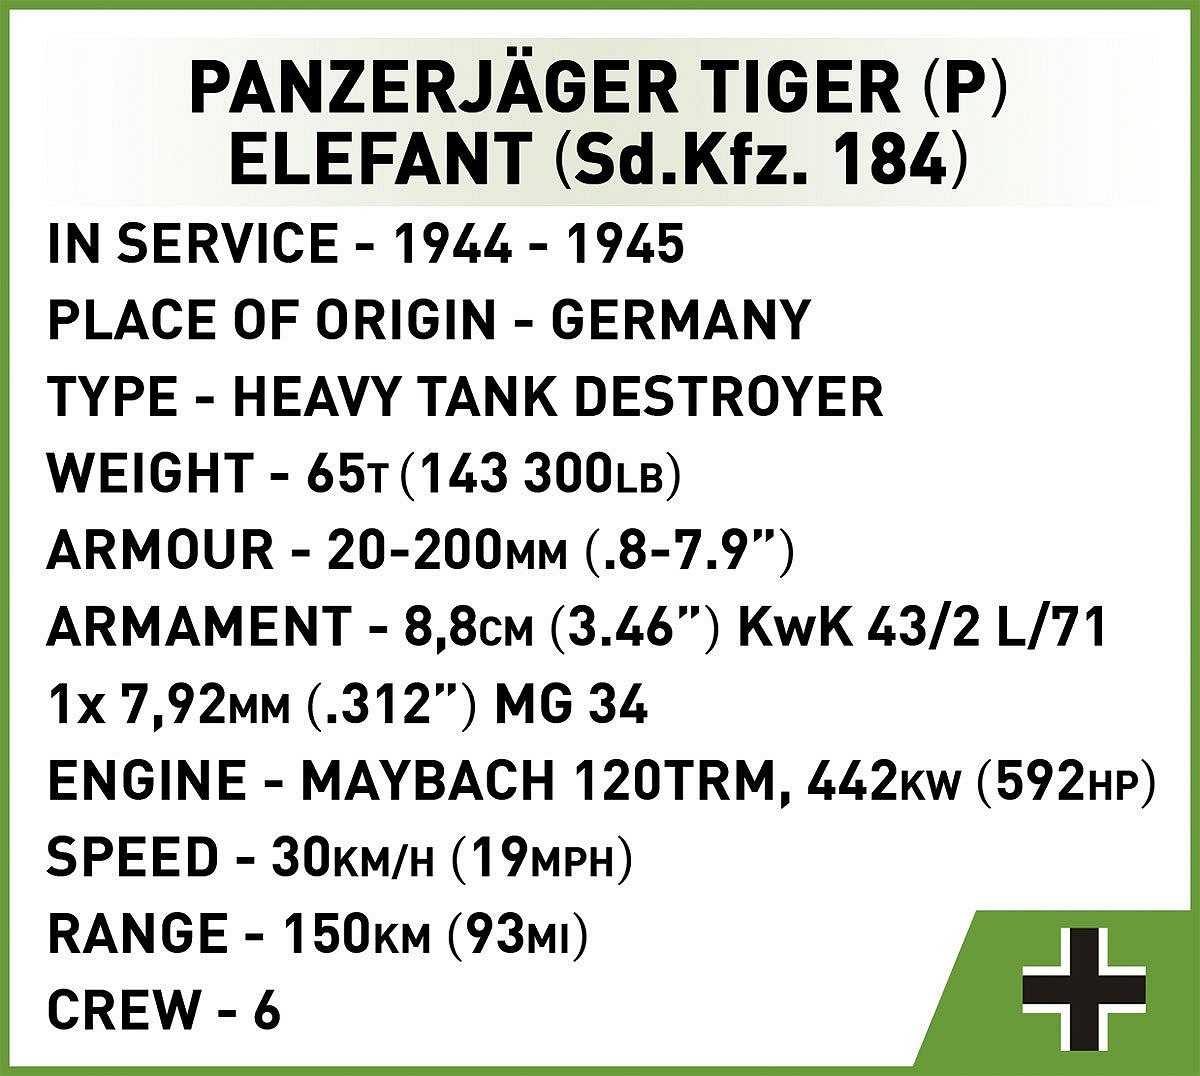 Panzerjäger Tiger (P) Elefant - fot. 9